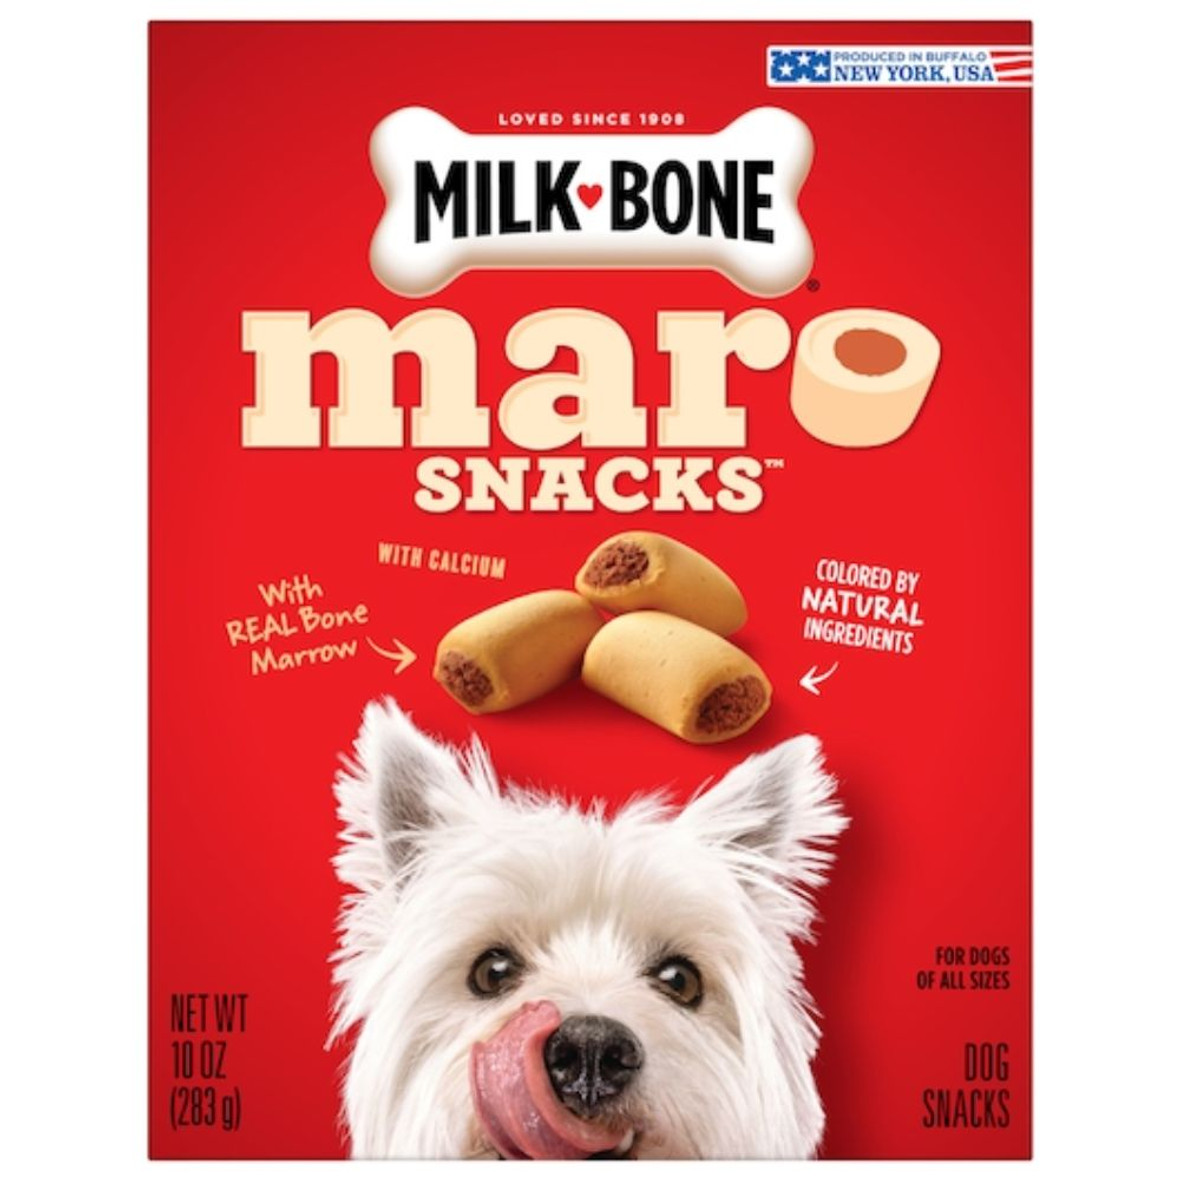 Milk Bone Milk Bone Dog Treats Original Crunchy